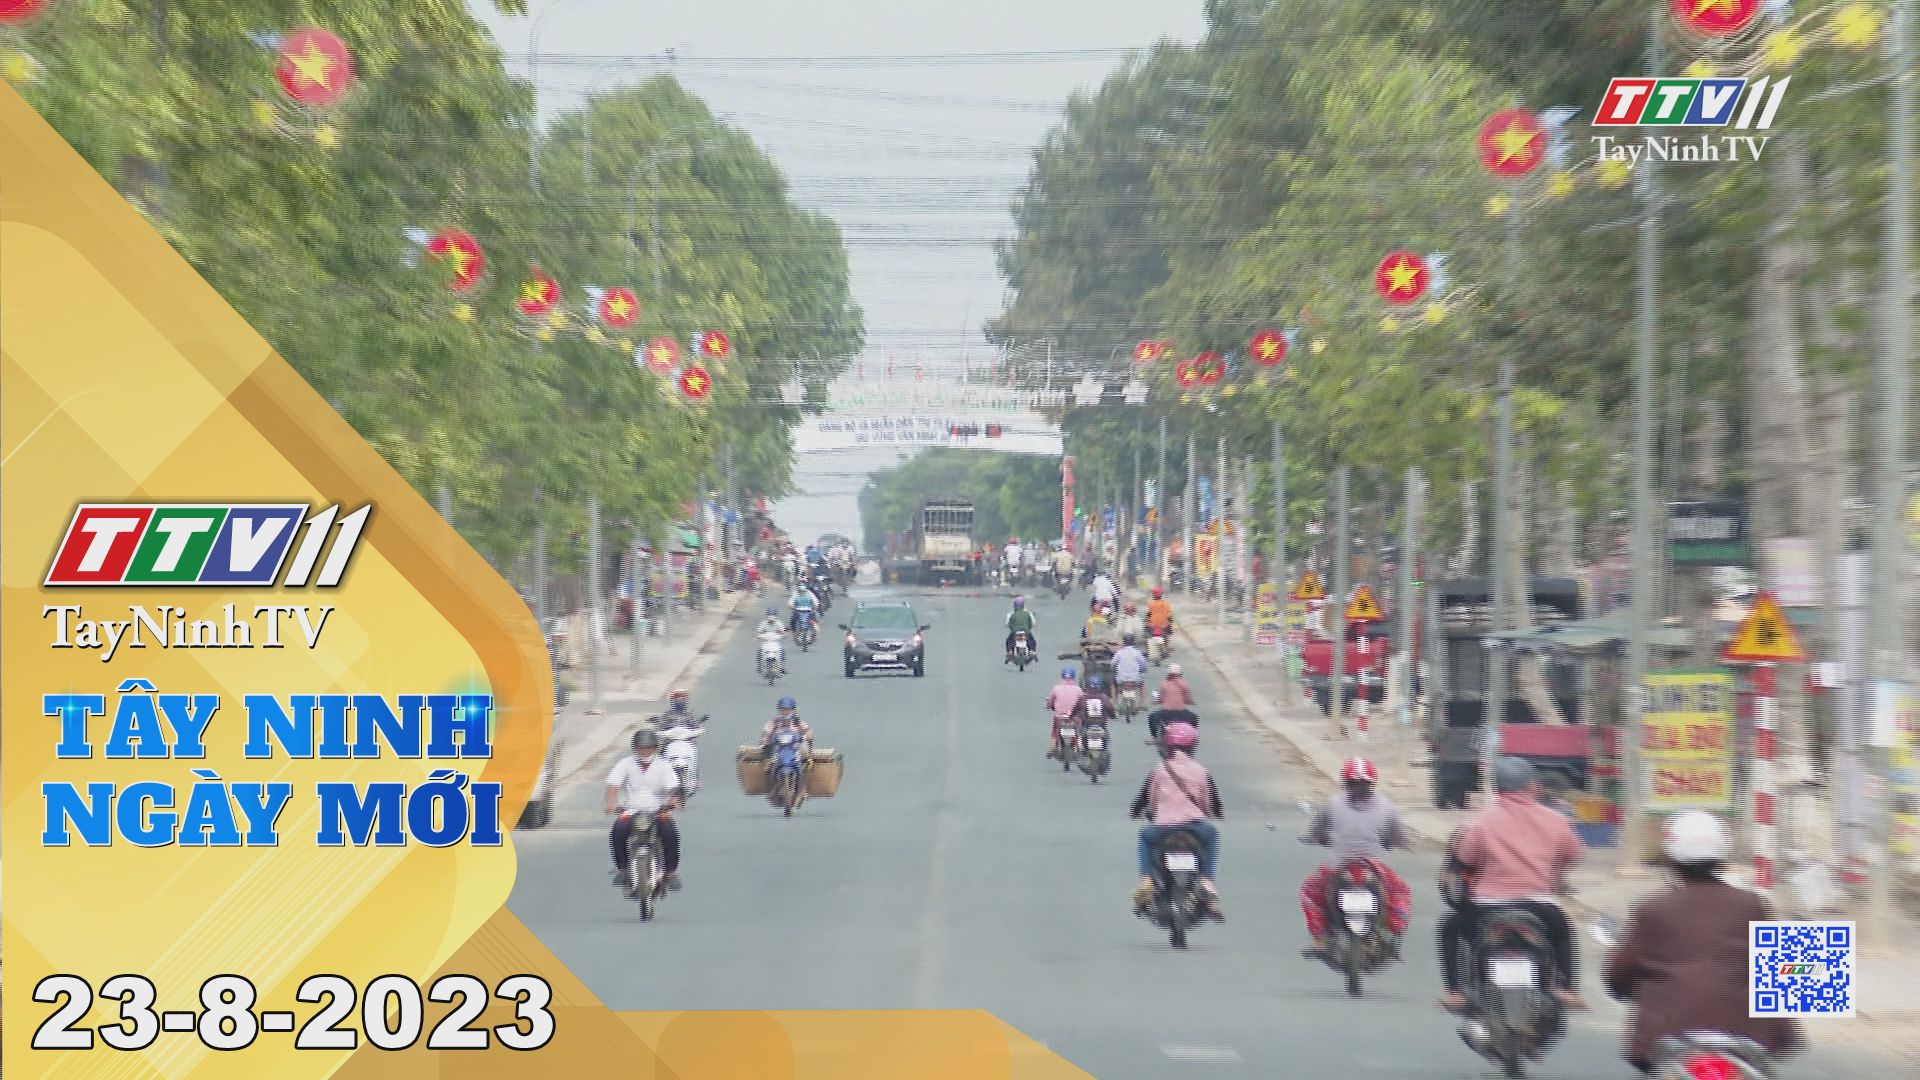 Tây Ninh ngày mới 23-8-2023 | Tin tức hôm nay | TayNinhTV